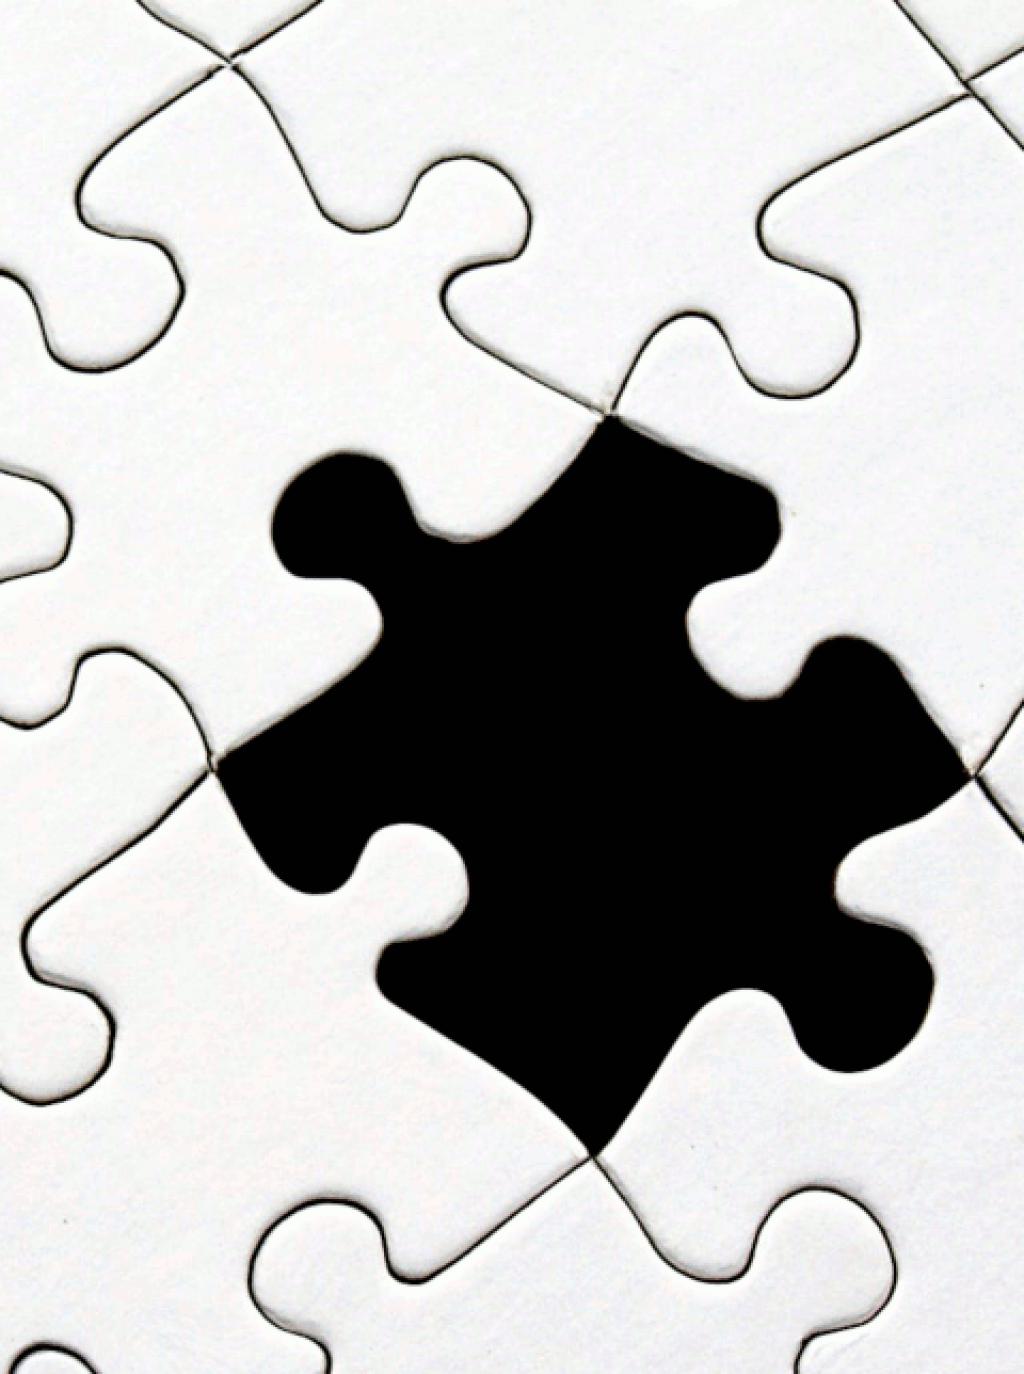 Darstellung eines weissen Puzzle bei dem ein Teilstück noch eingesetzt werden muss. [https://www.pexels.com]